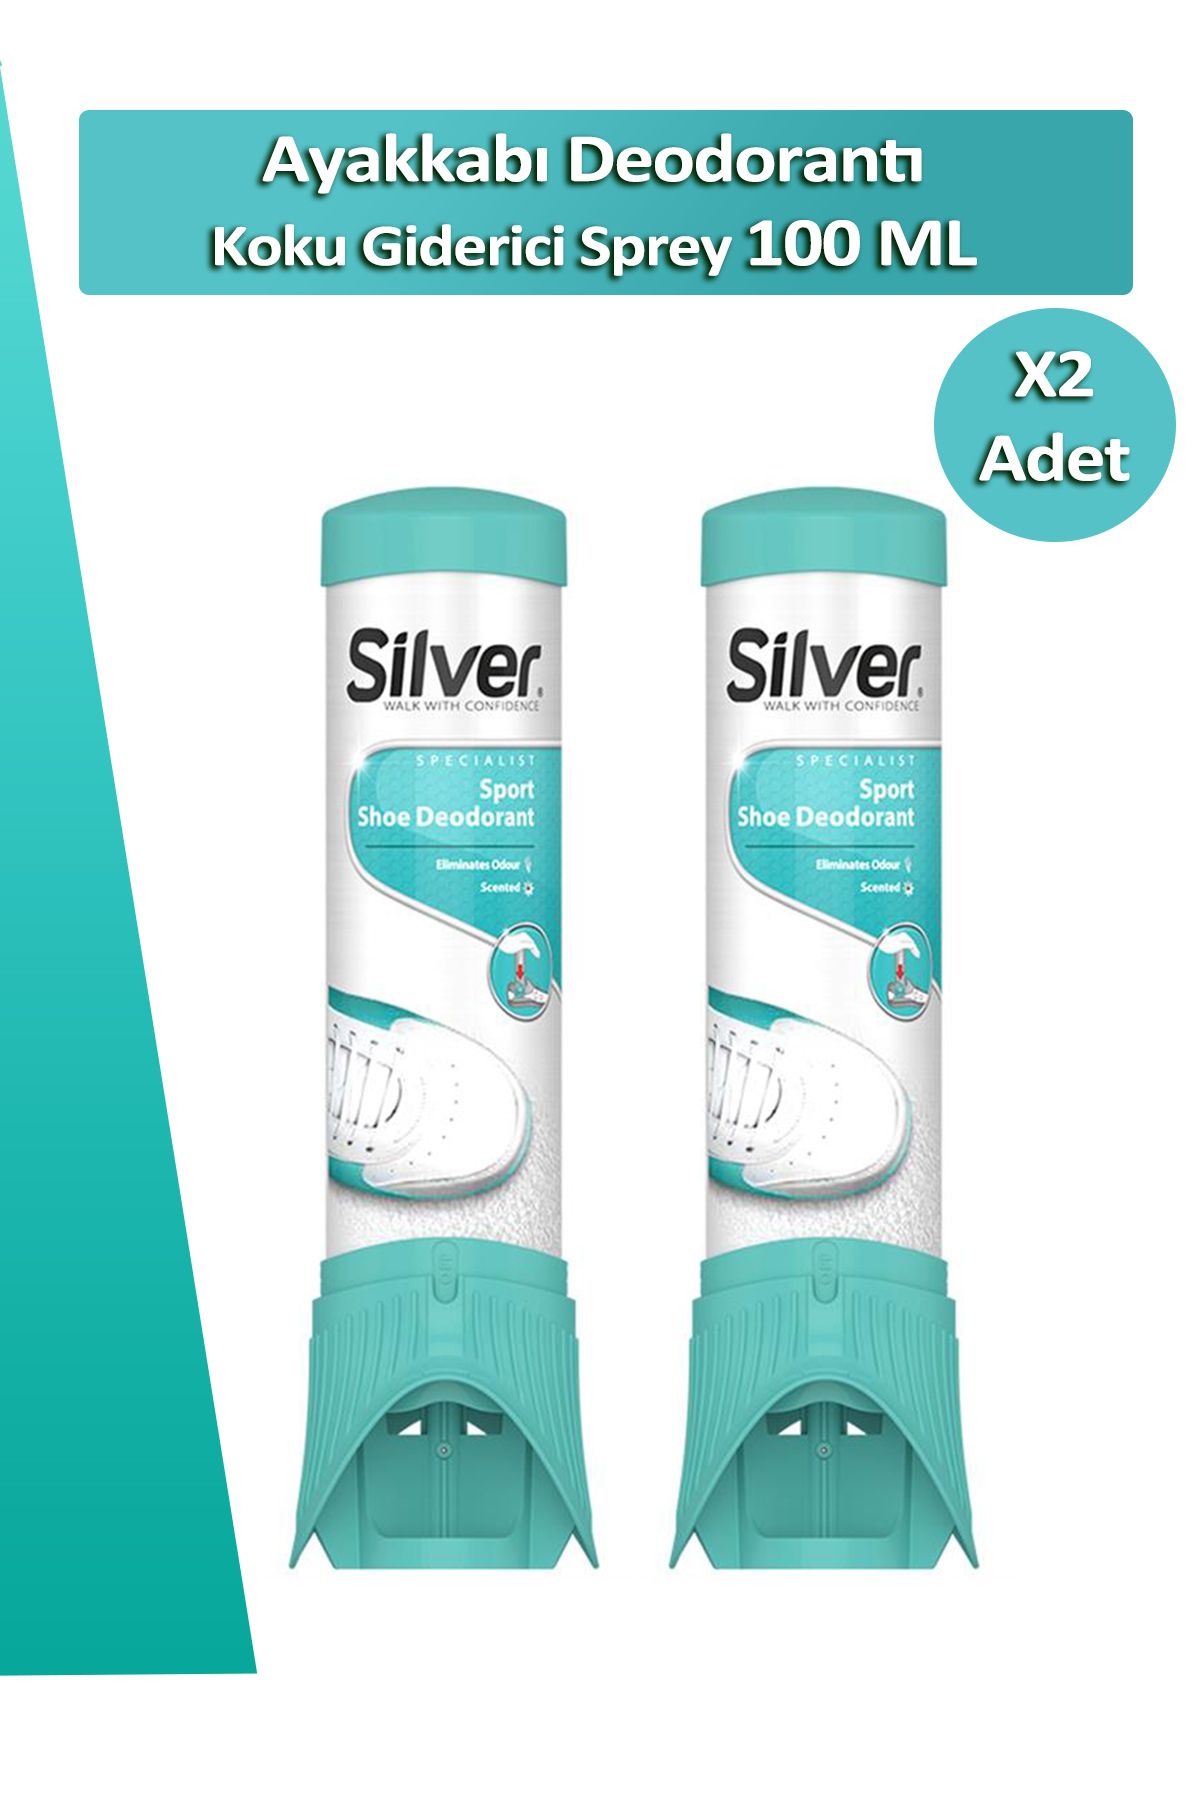 Silver 2 Adet Fresh-up Ayakkabı Deodorantı Koku Giderici Önleyici Sprey 100 ml Ayakkabı Çekeceği